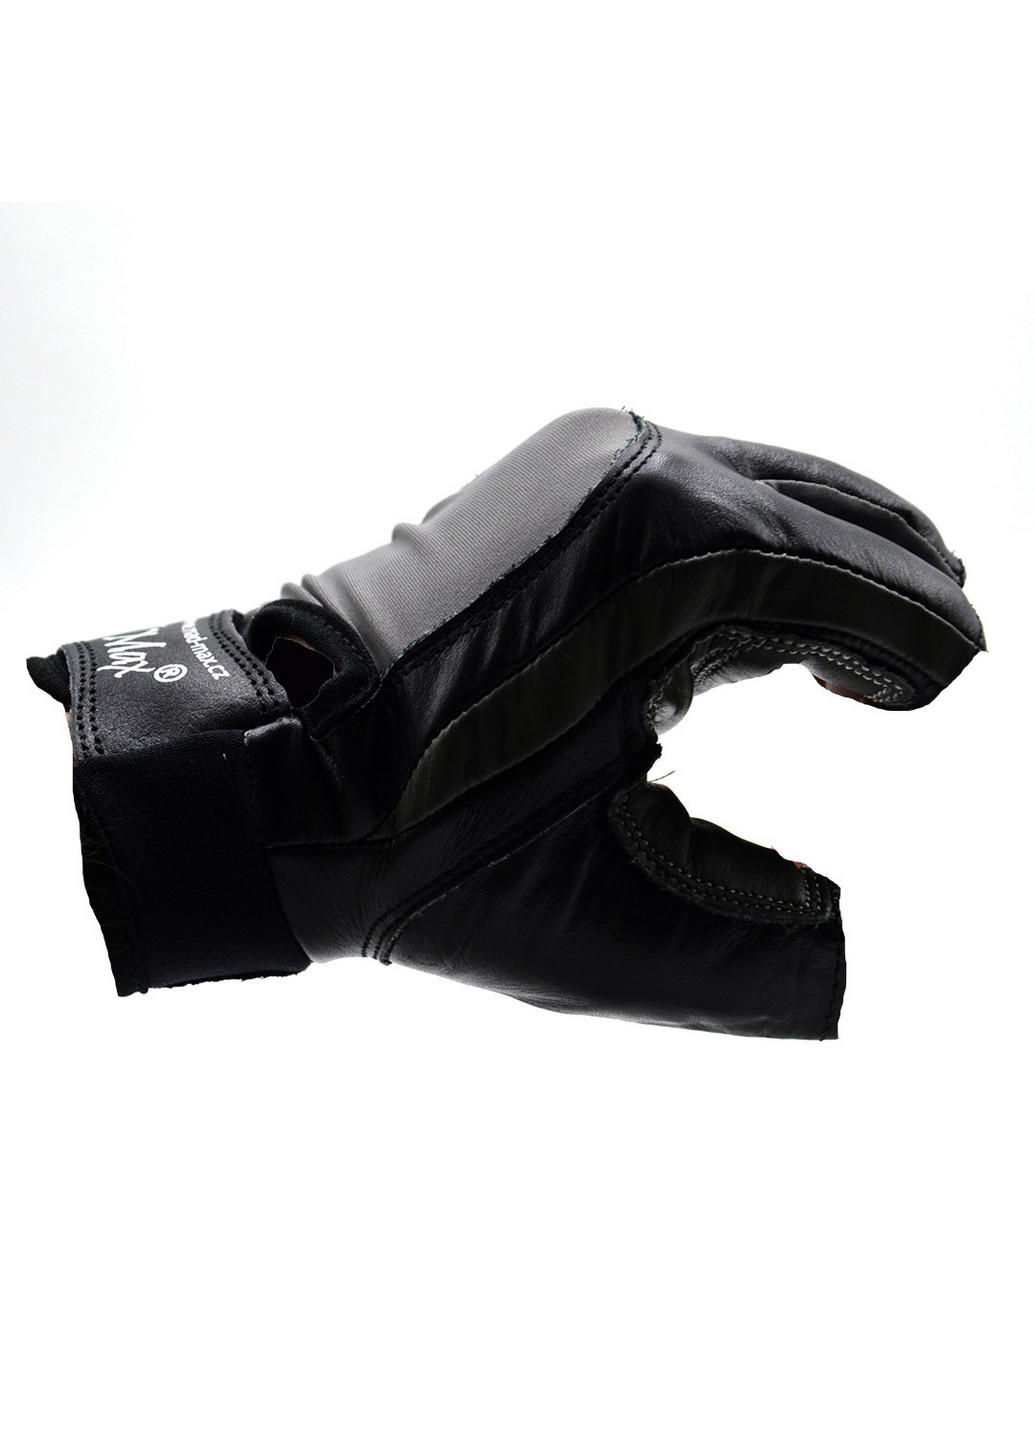 Унисекс перчатки для фитнеса M Mad Max (267656605)